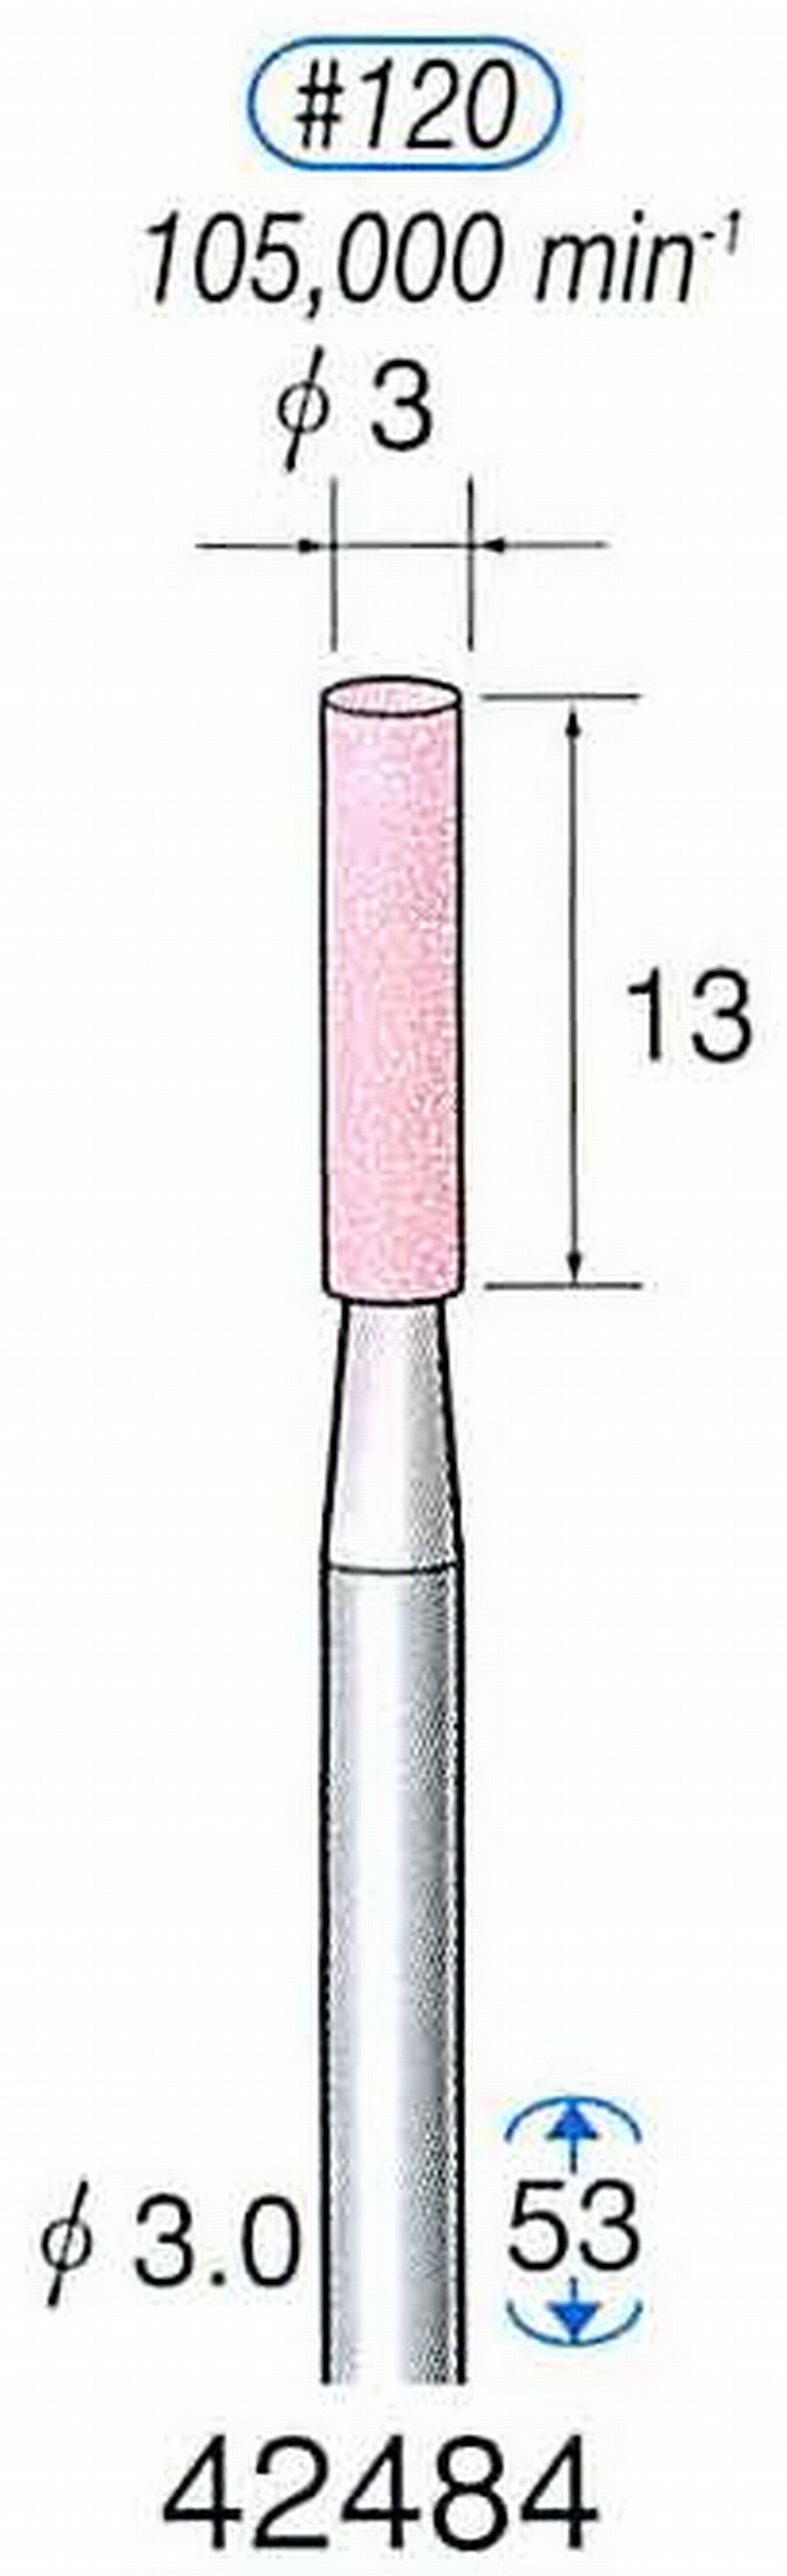 ナカニシ/NAKANISHI 軸付砥石(PA砥粒) 一般研削用 軸径(シャンク) φ3.0mm 42484